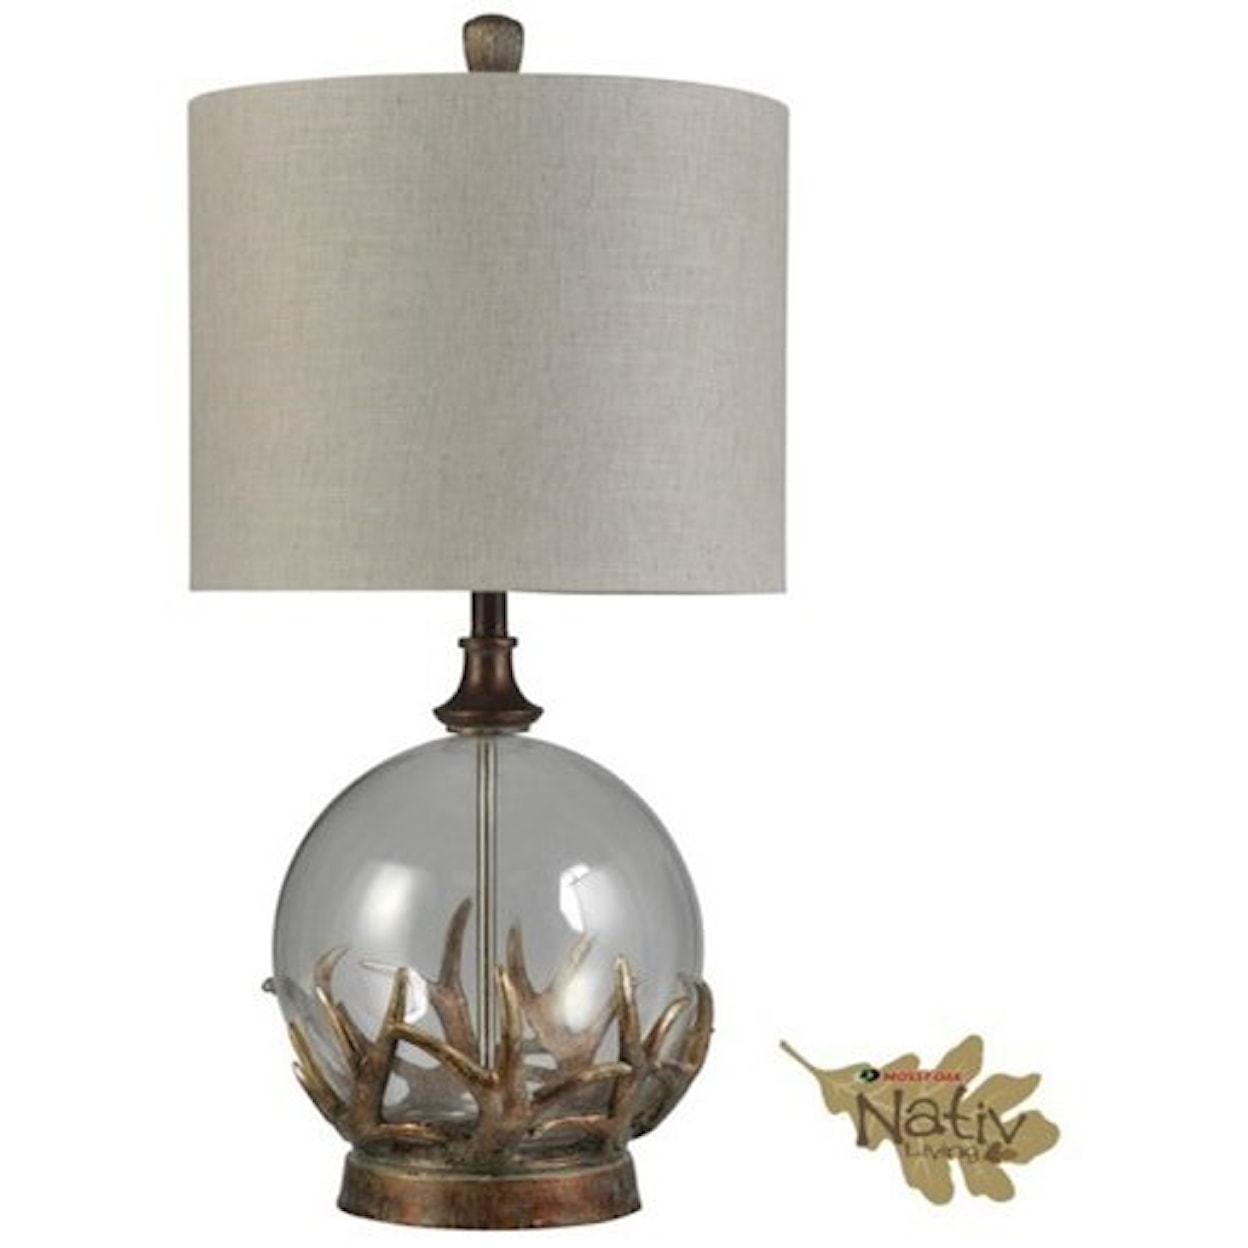 StyleCraft Lamps Mossy Oak Branded Table Lamp